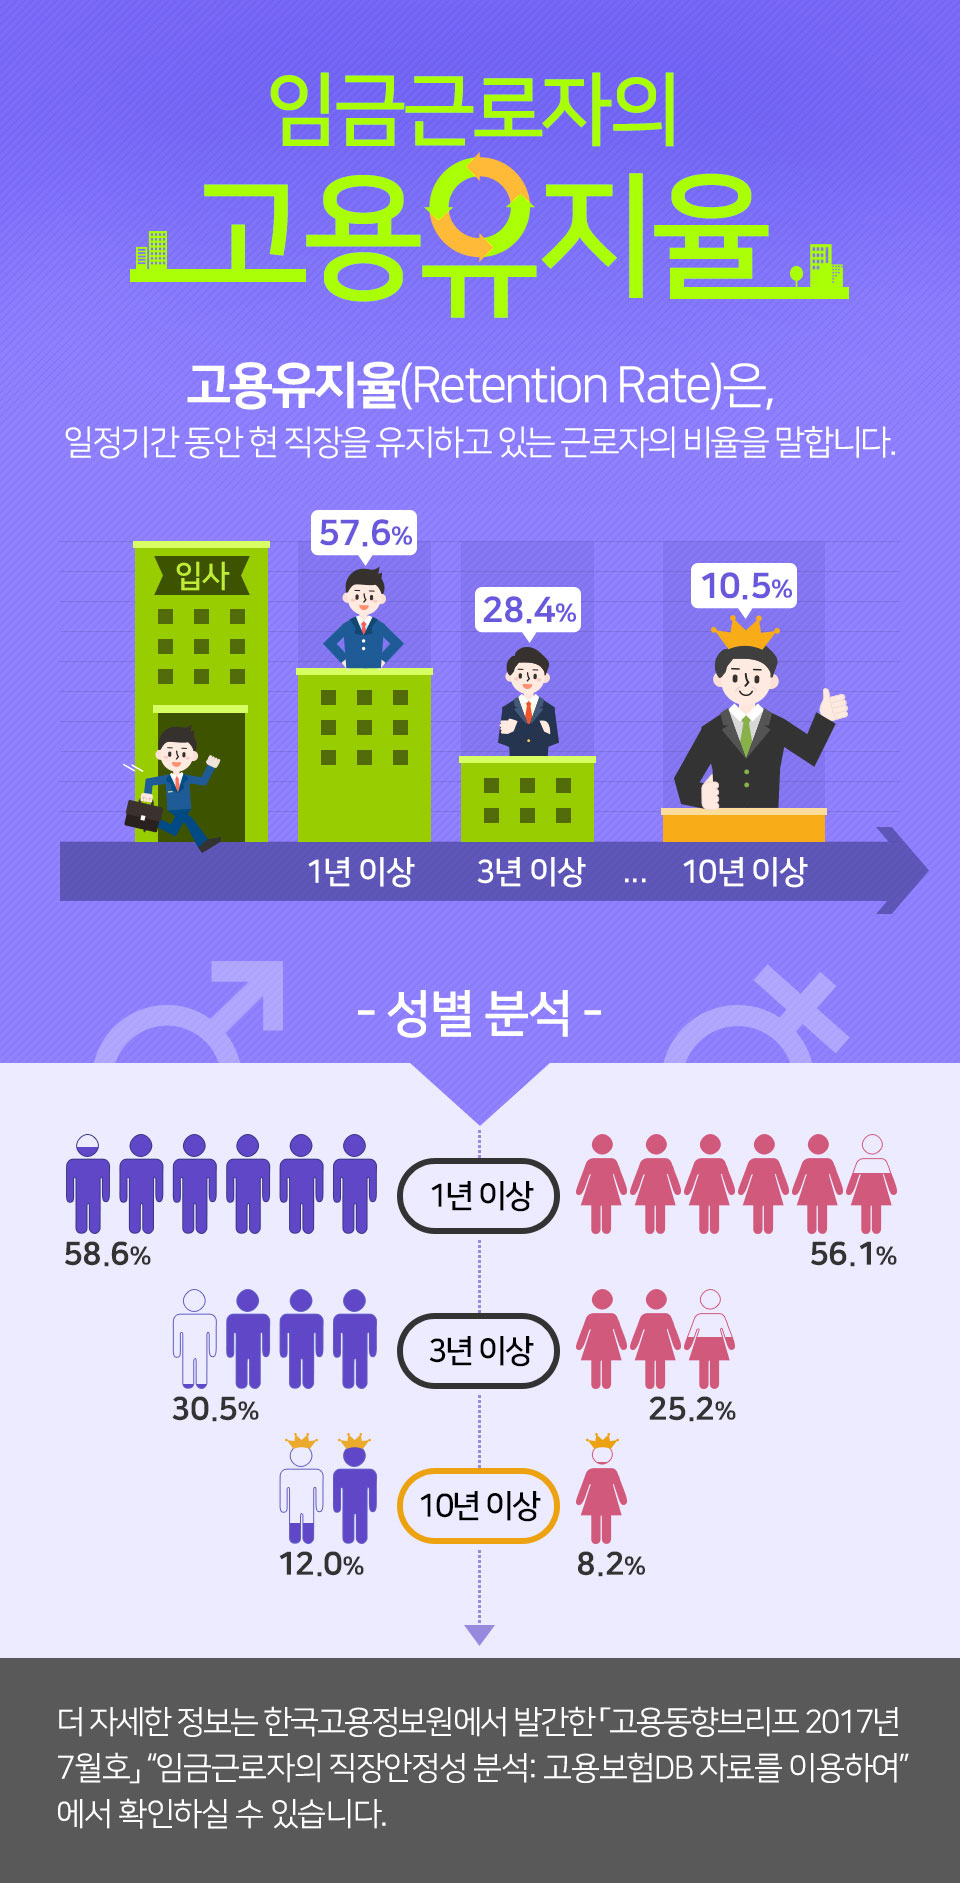 임금근로자의 고용유지율
교용유지율은, 일정기간 동안 현직장을 유지하고있는 근로자의 비율을 말합니다. 
1년이상(57.6퍼센트) - 3년이상(28.4퍼센트) - ... - 10년이상(10.5퍼센트) - 
성별 분석으로 보면 1년이상 남성(58.6퍼센트), 여성(56.1퍼센트) 3년이상 남성(30.5퍼센트), 여성(25.2퍼센트) 10년이상 남성(12퍼센트), 여성(8.2퍼센트) 
더 자세한 정보는 한국고용정보원에서 발간한 고용동향브리프 2017년 7월호 임금근로자의 직장안정성 분석 : 고용보험 DB 자료를 이용하여 에서 확인하실 수 있습니다.